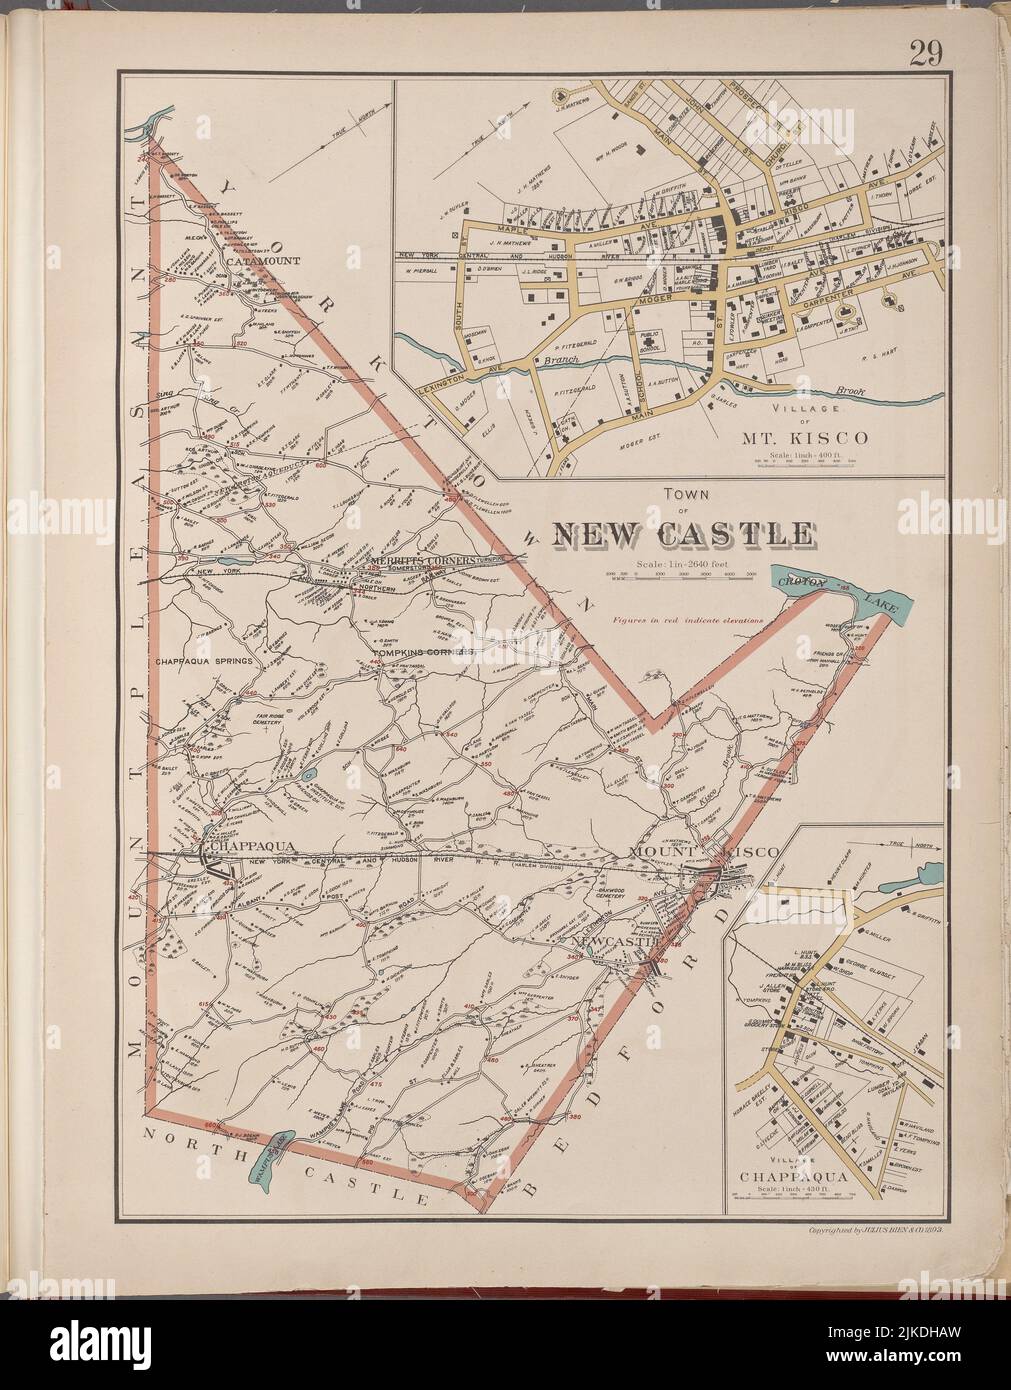 Westchester, plaque no 29 [carte de la ville de New Castle, village de Mt.Kisco, village de Chappaqua]. Bien, Joseph R. (Éditeur). Les atlas des États-Unis Banque D'Images